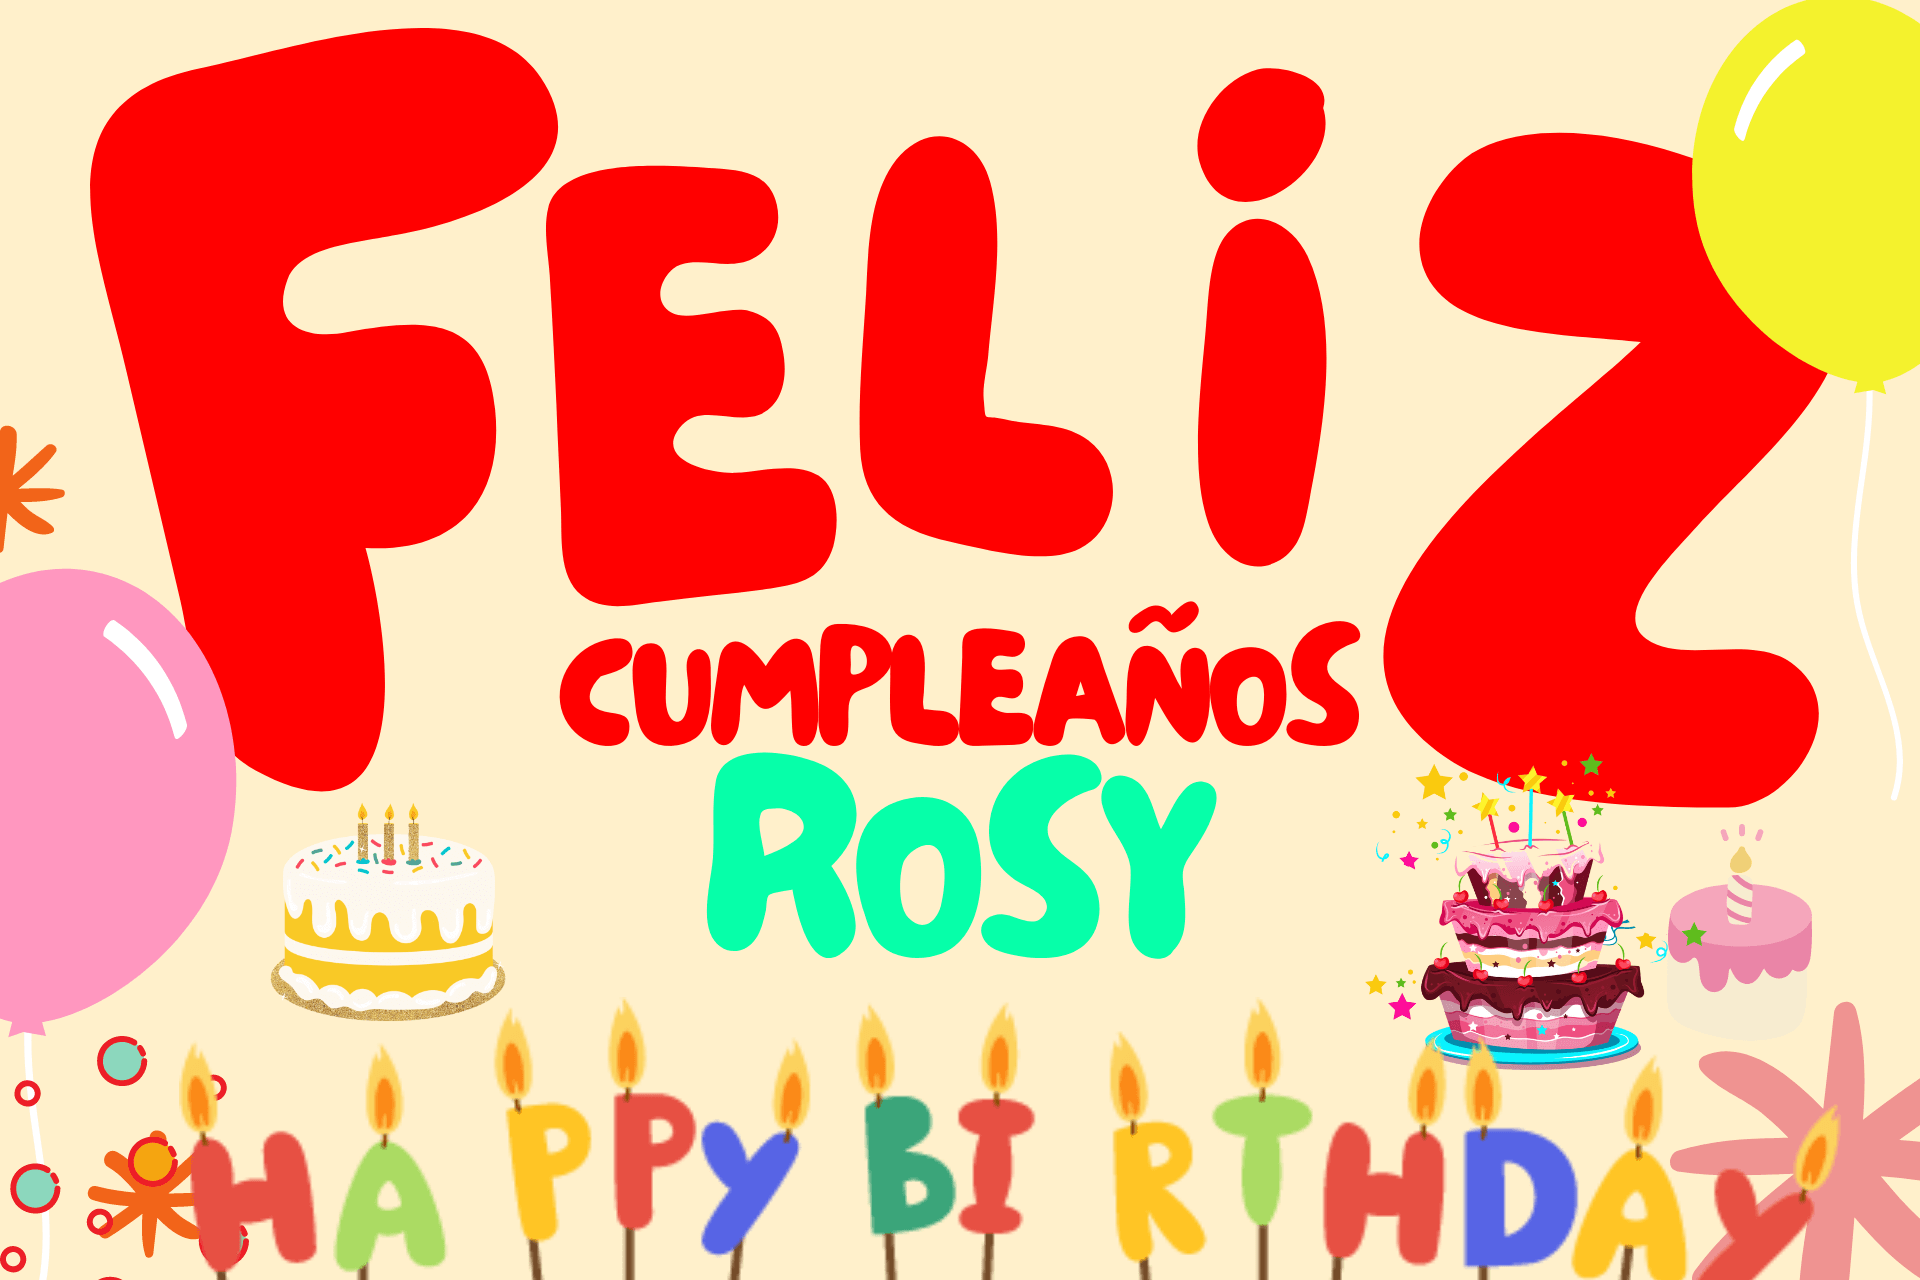 Feliz cumpleaños Rosy! ¡Celebra este día tan especial!